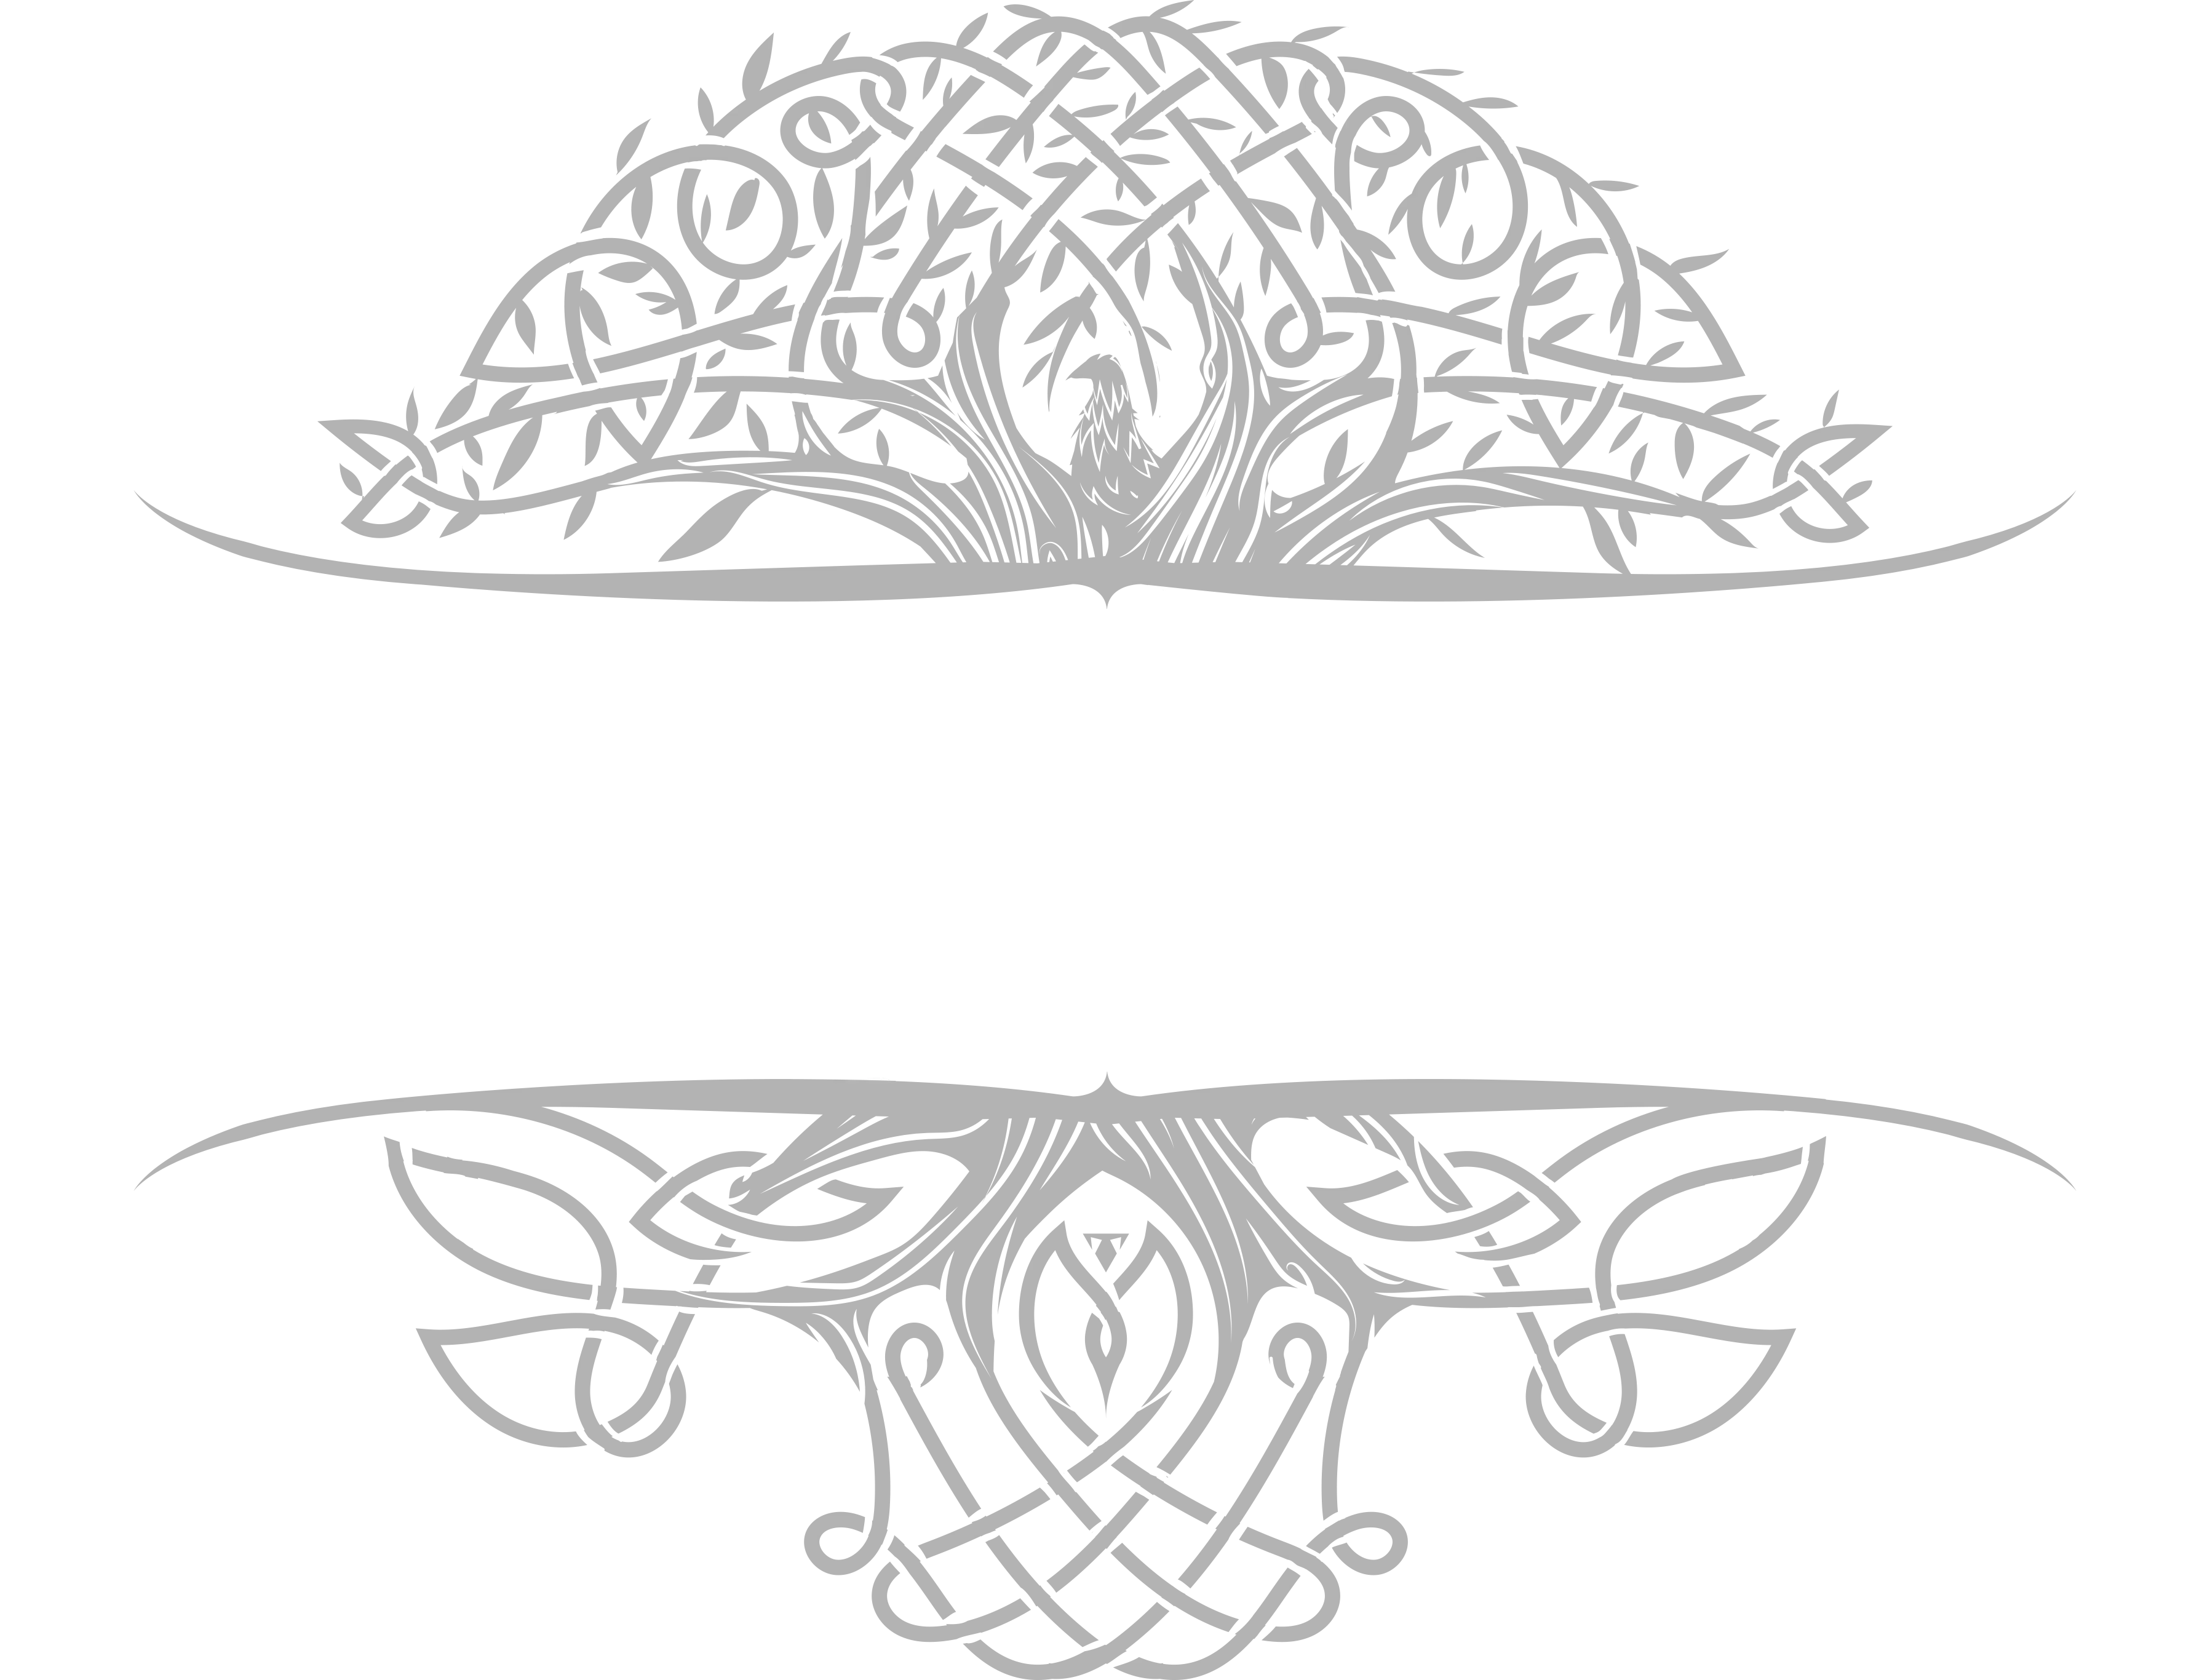 Aexylium